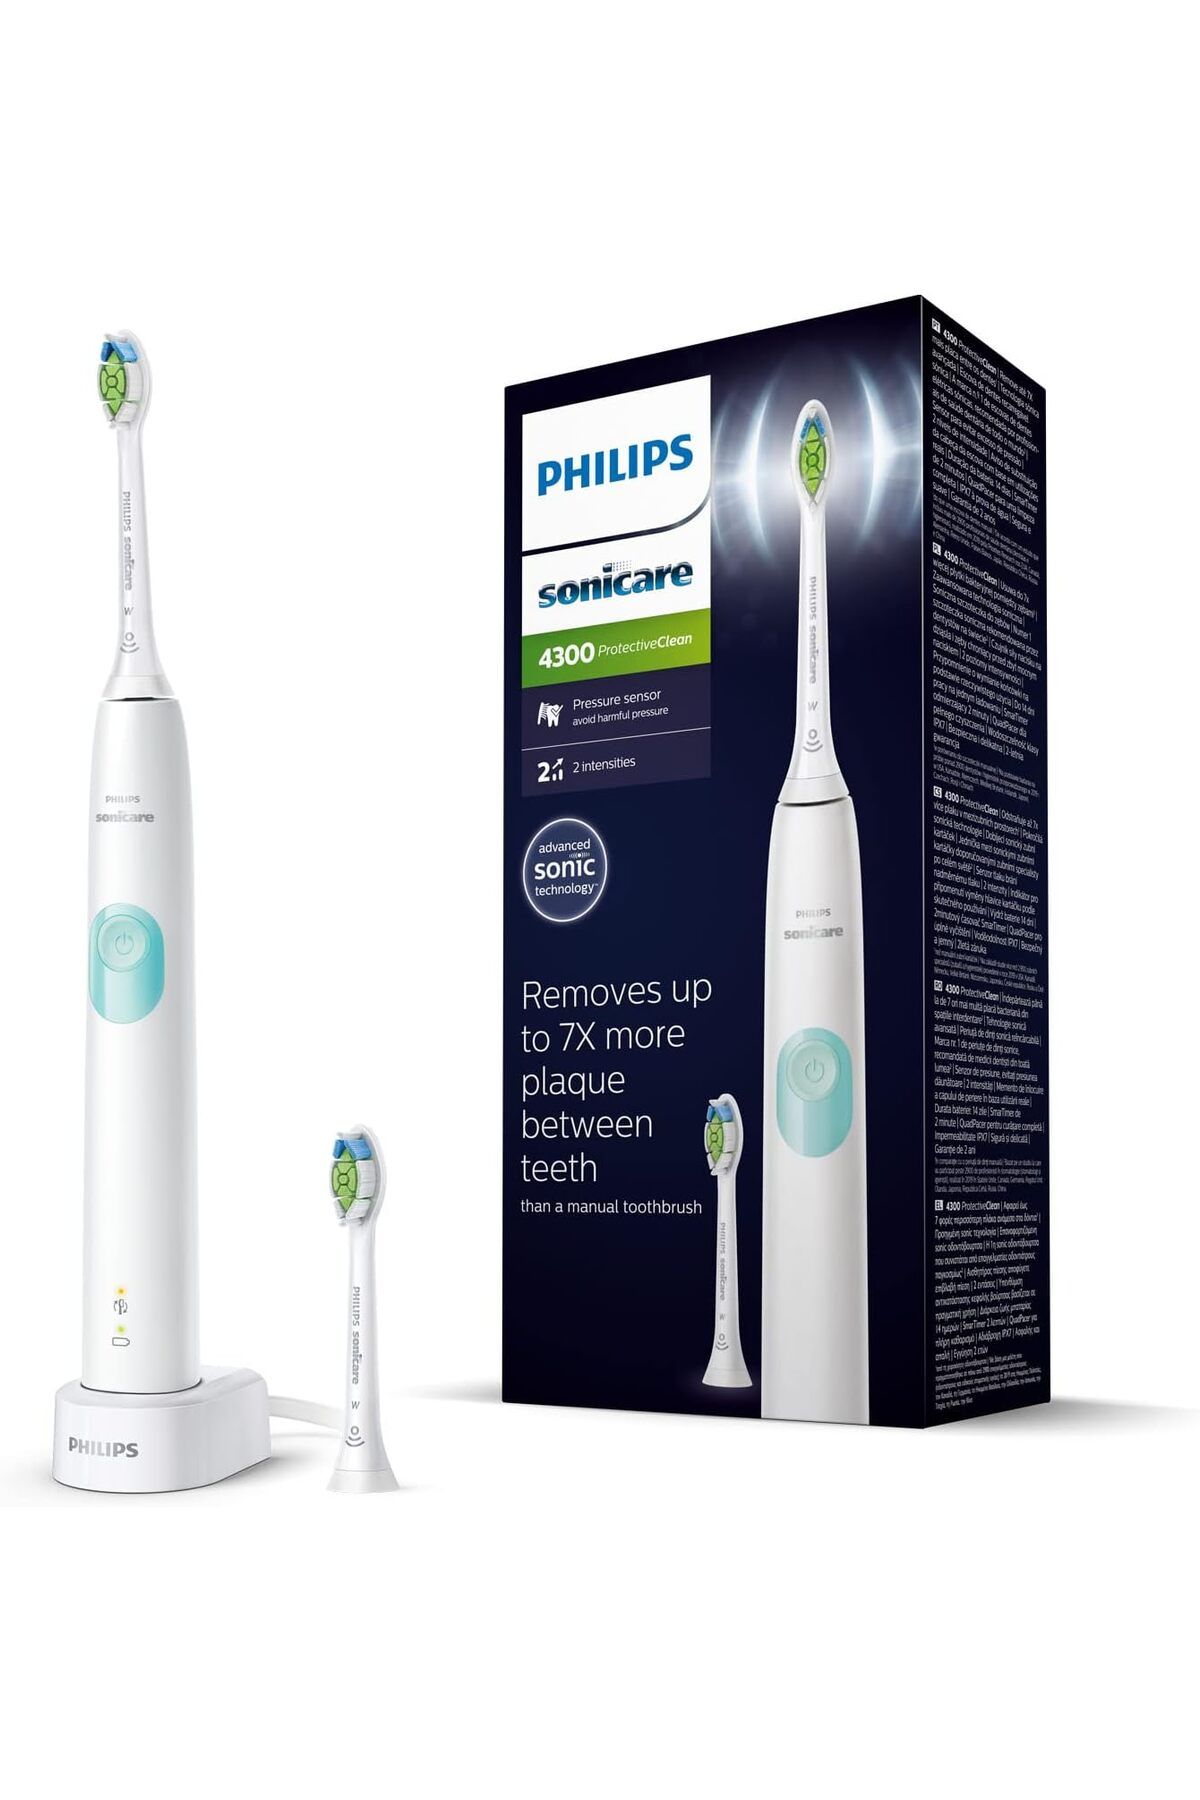 Philips Sonicare ProtectiveClean 4300 elektrikli sonik diş fırçası